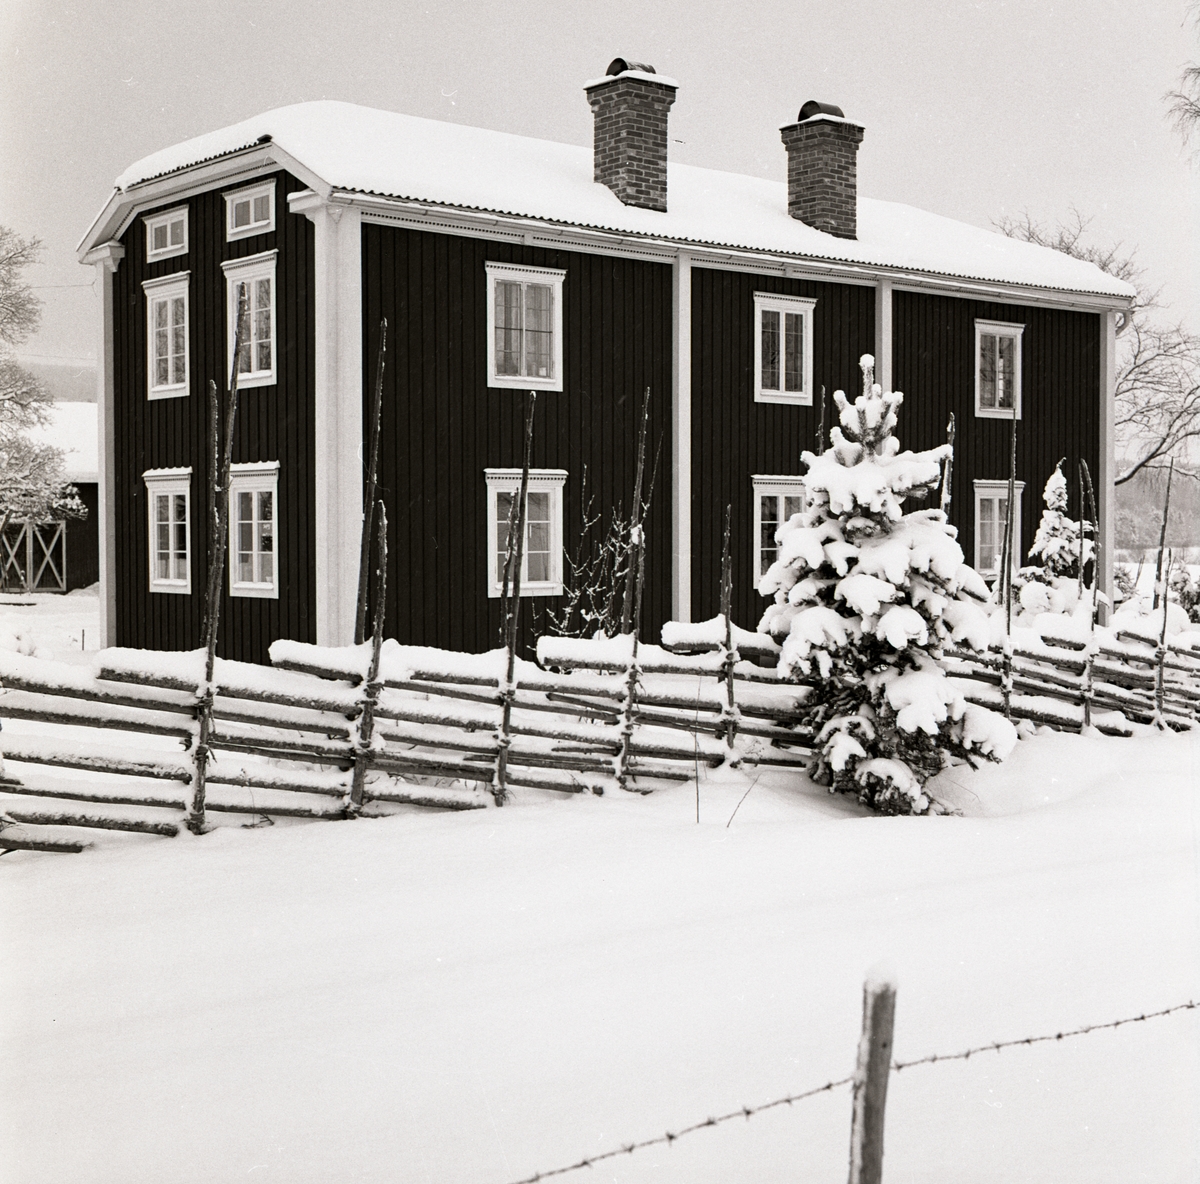 Gården Sunnanåker i vinterskrud, januari 1970